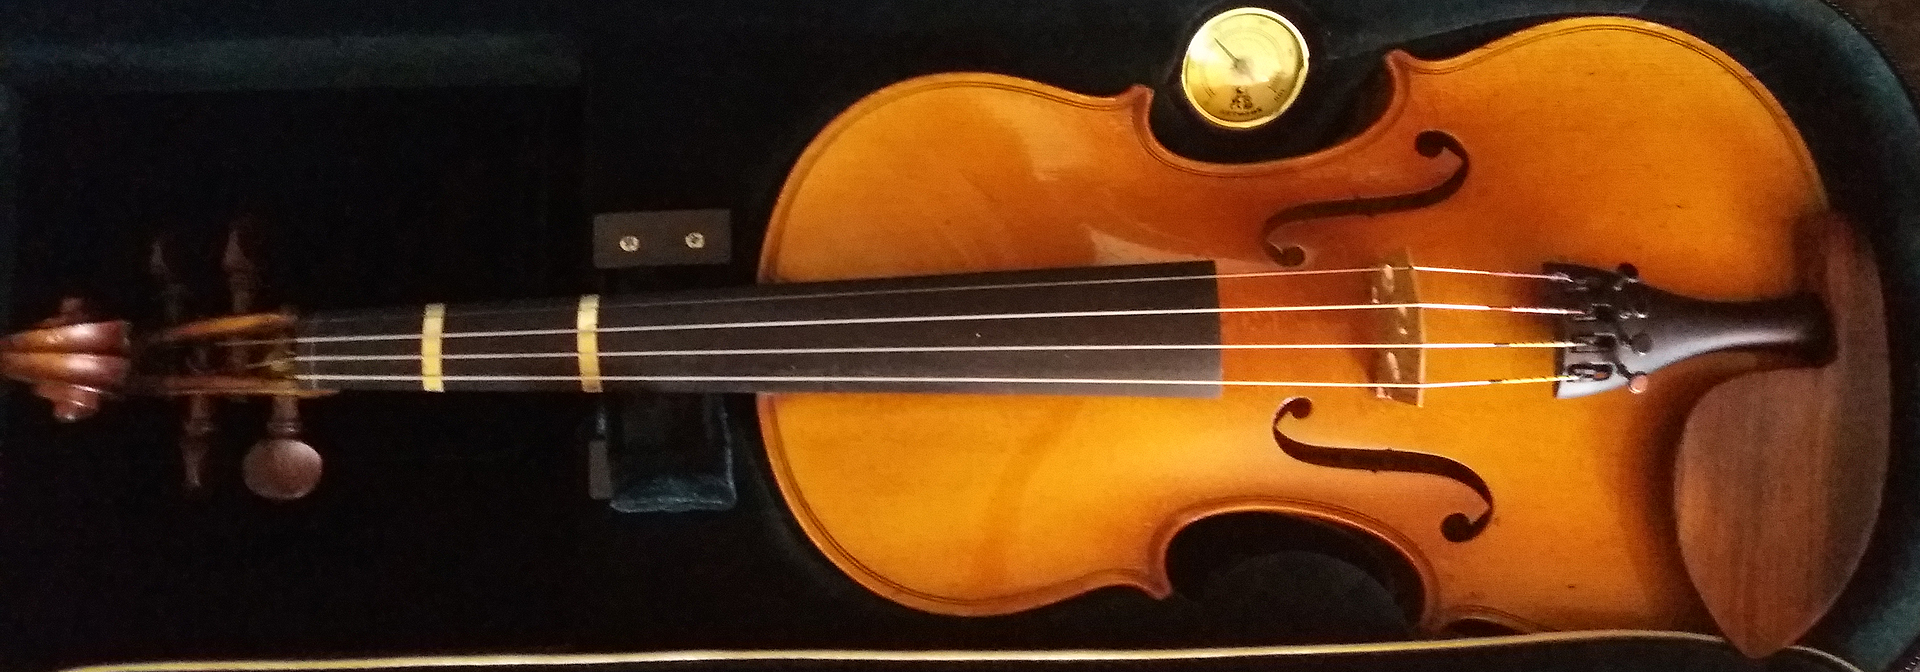 mon violon, magnifique